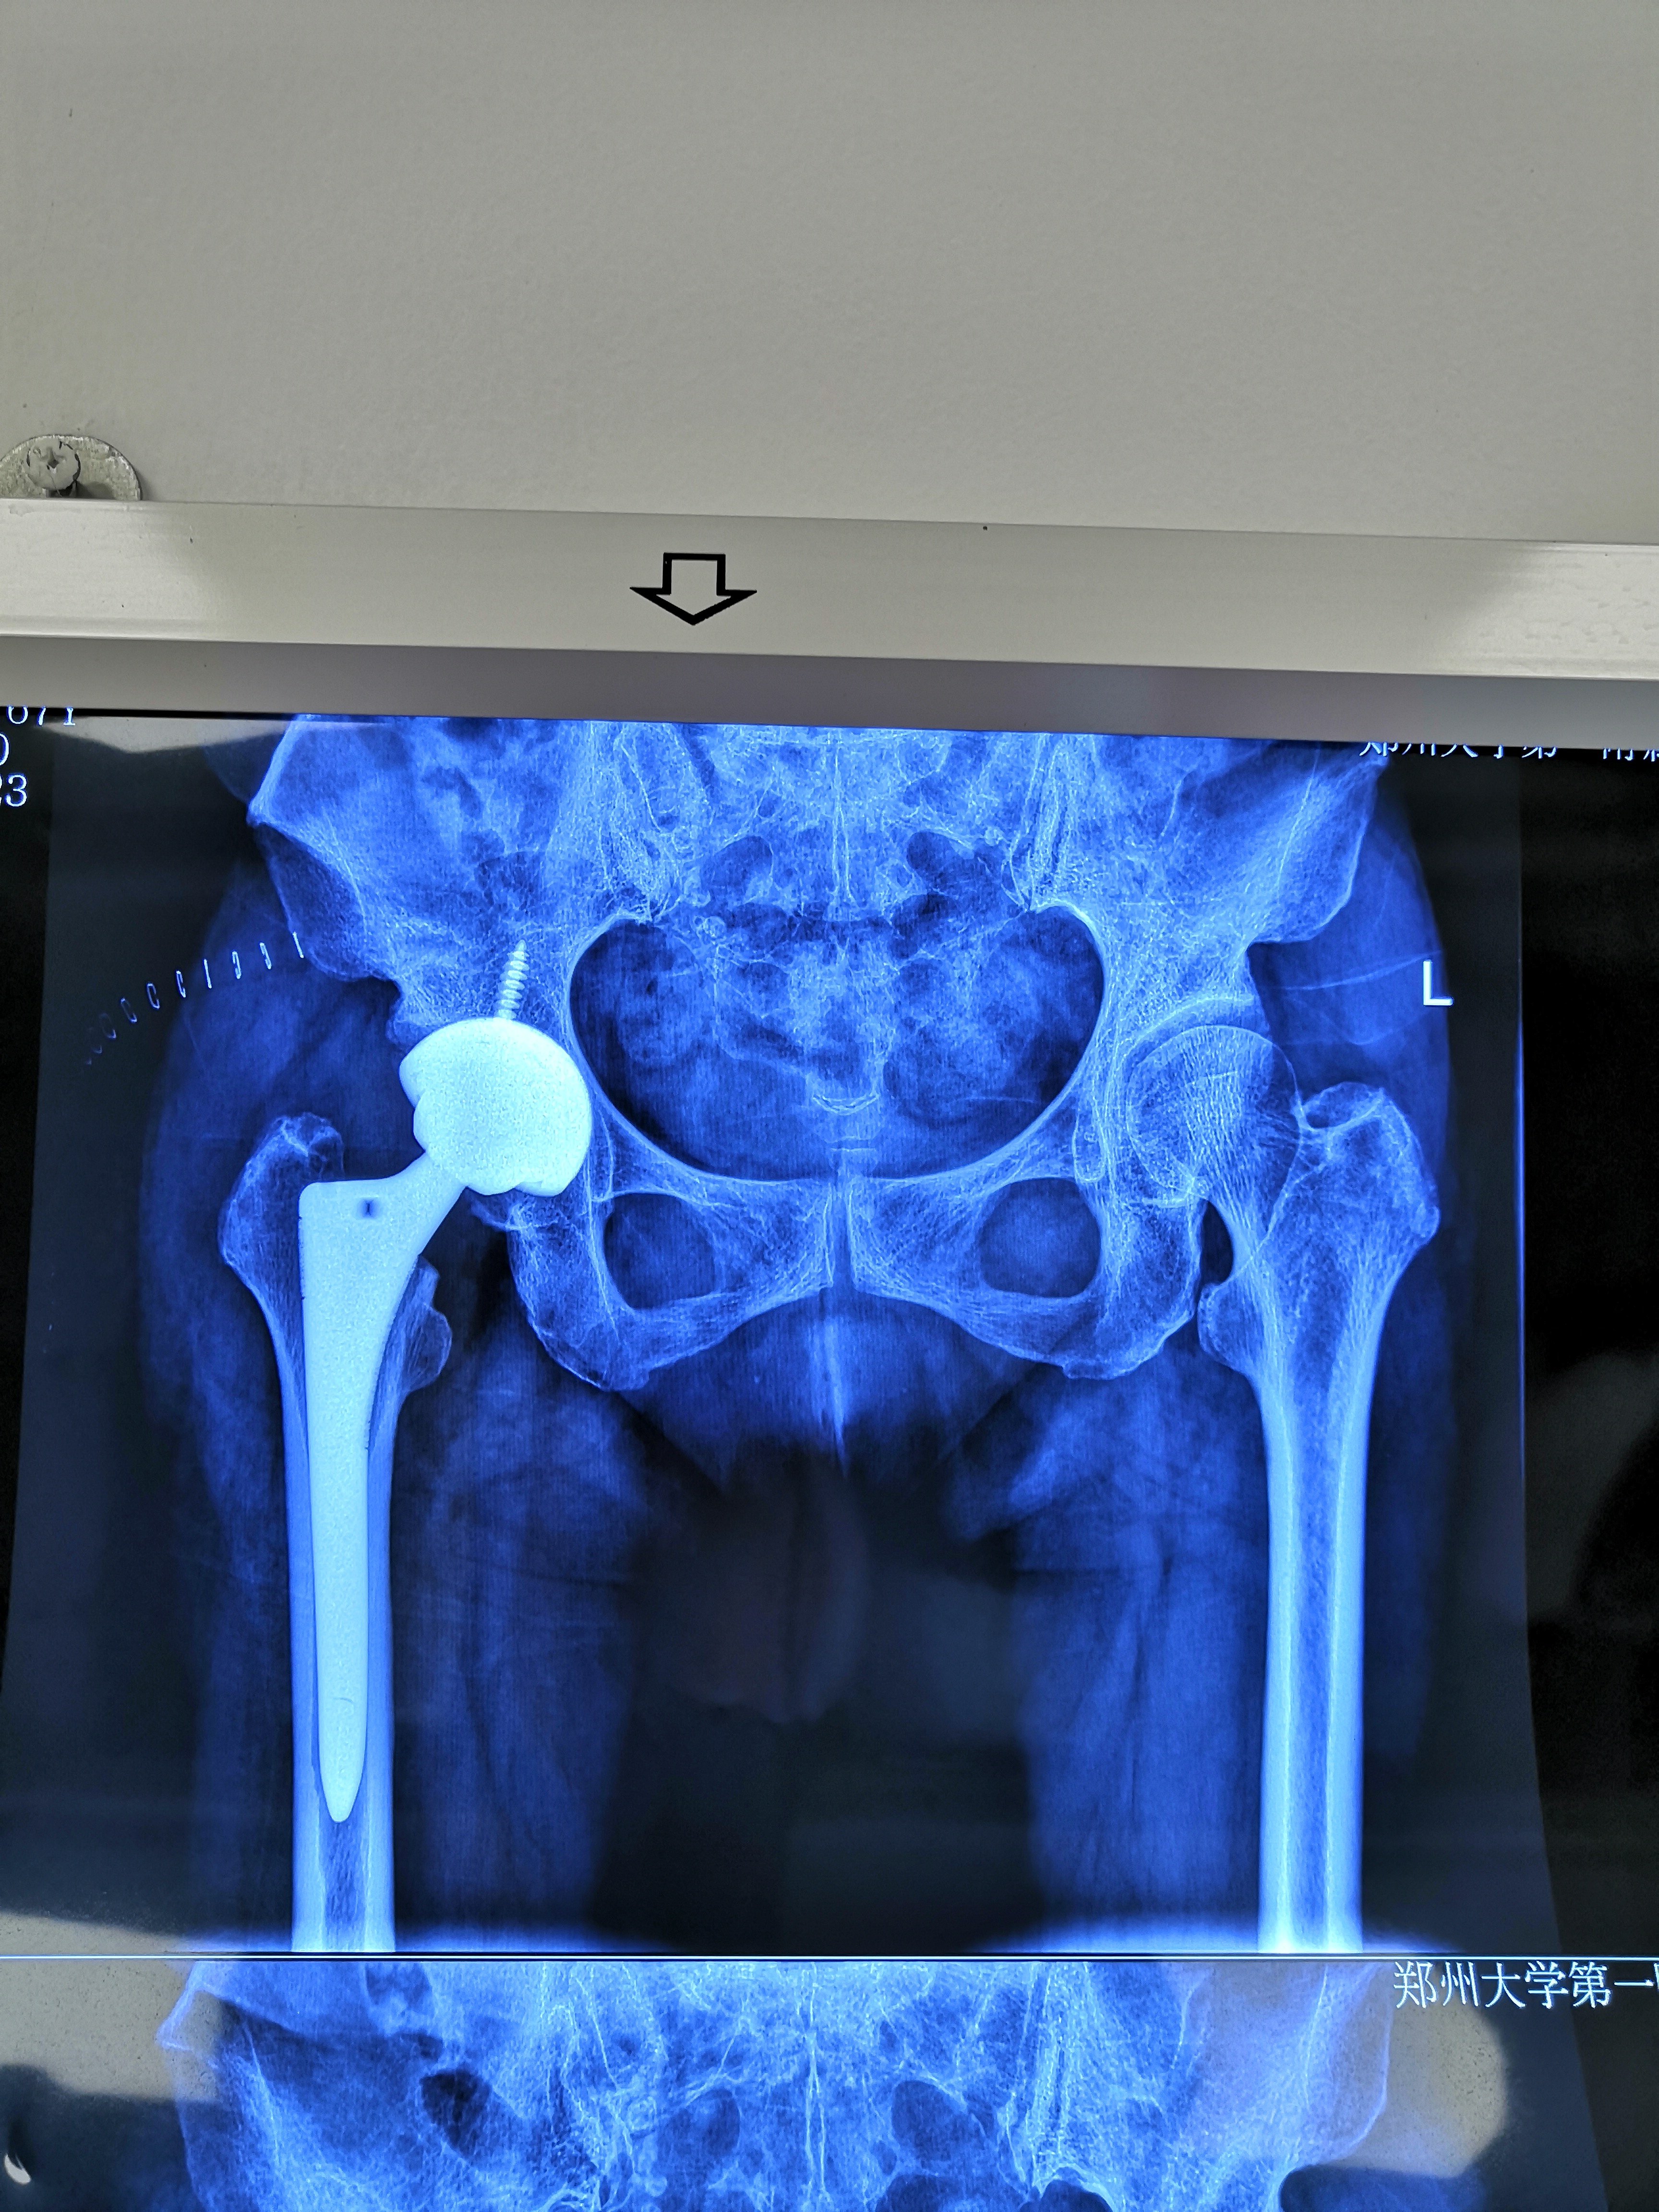 一例股骨头坏死术前术后对比